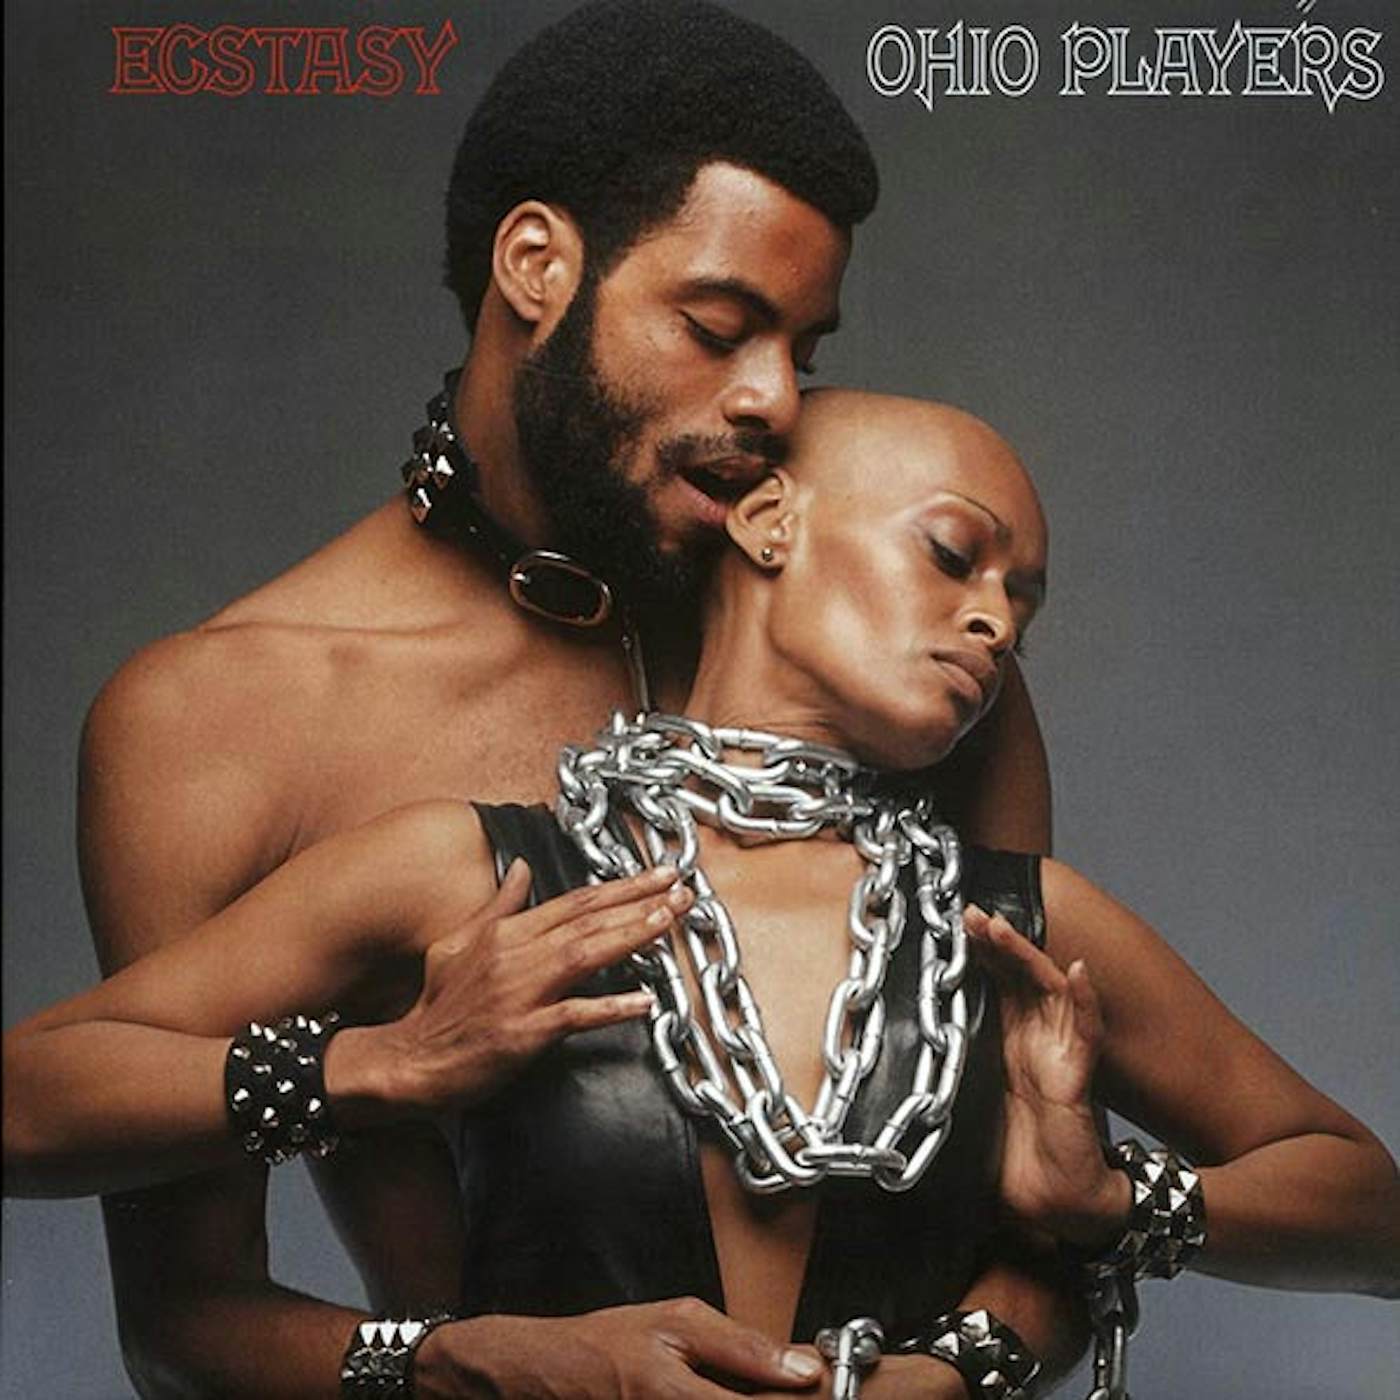 Ohio Players LP - Ecstasy (Vinyl)